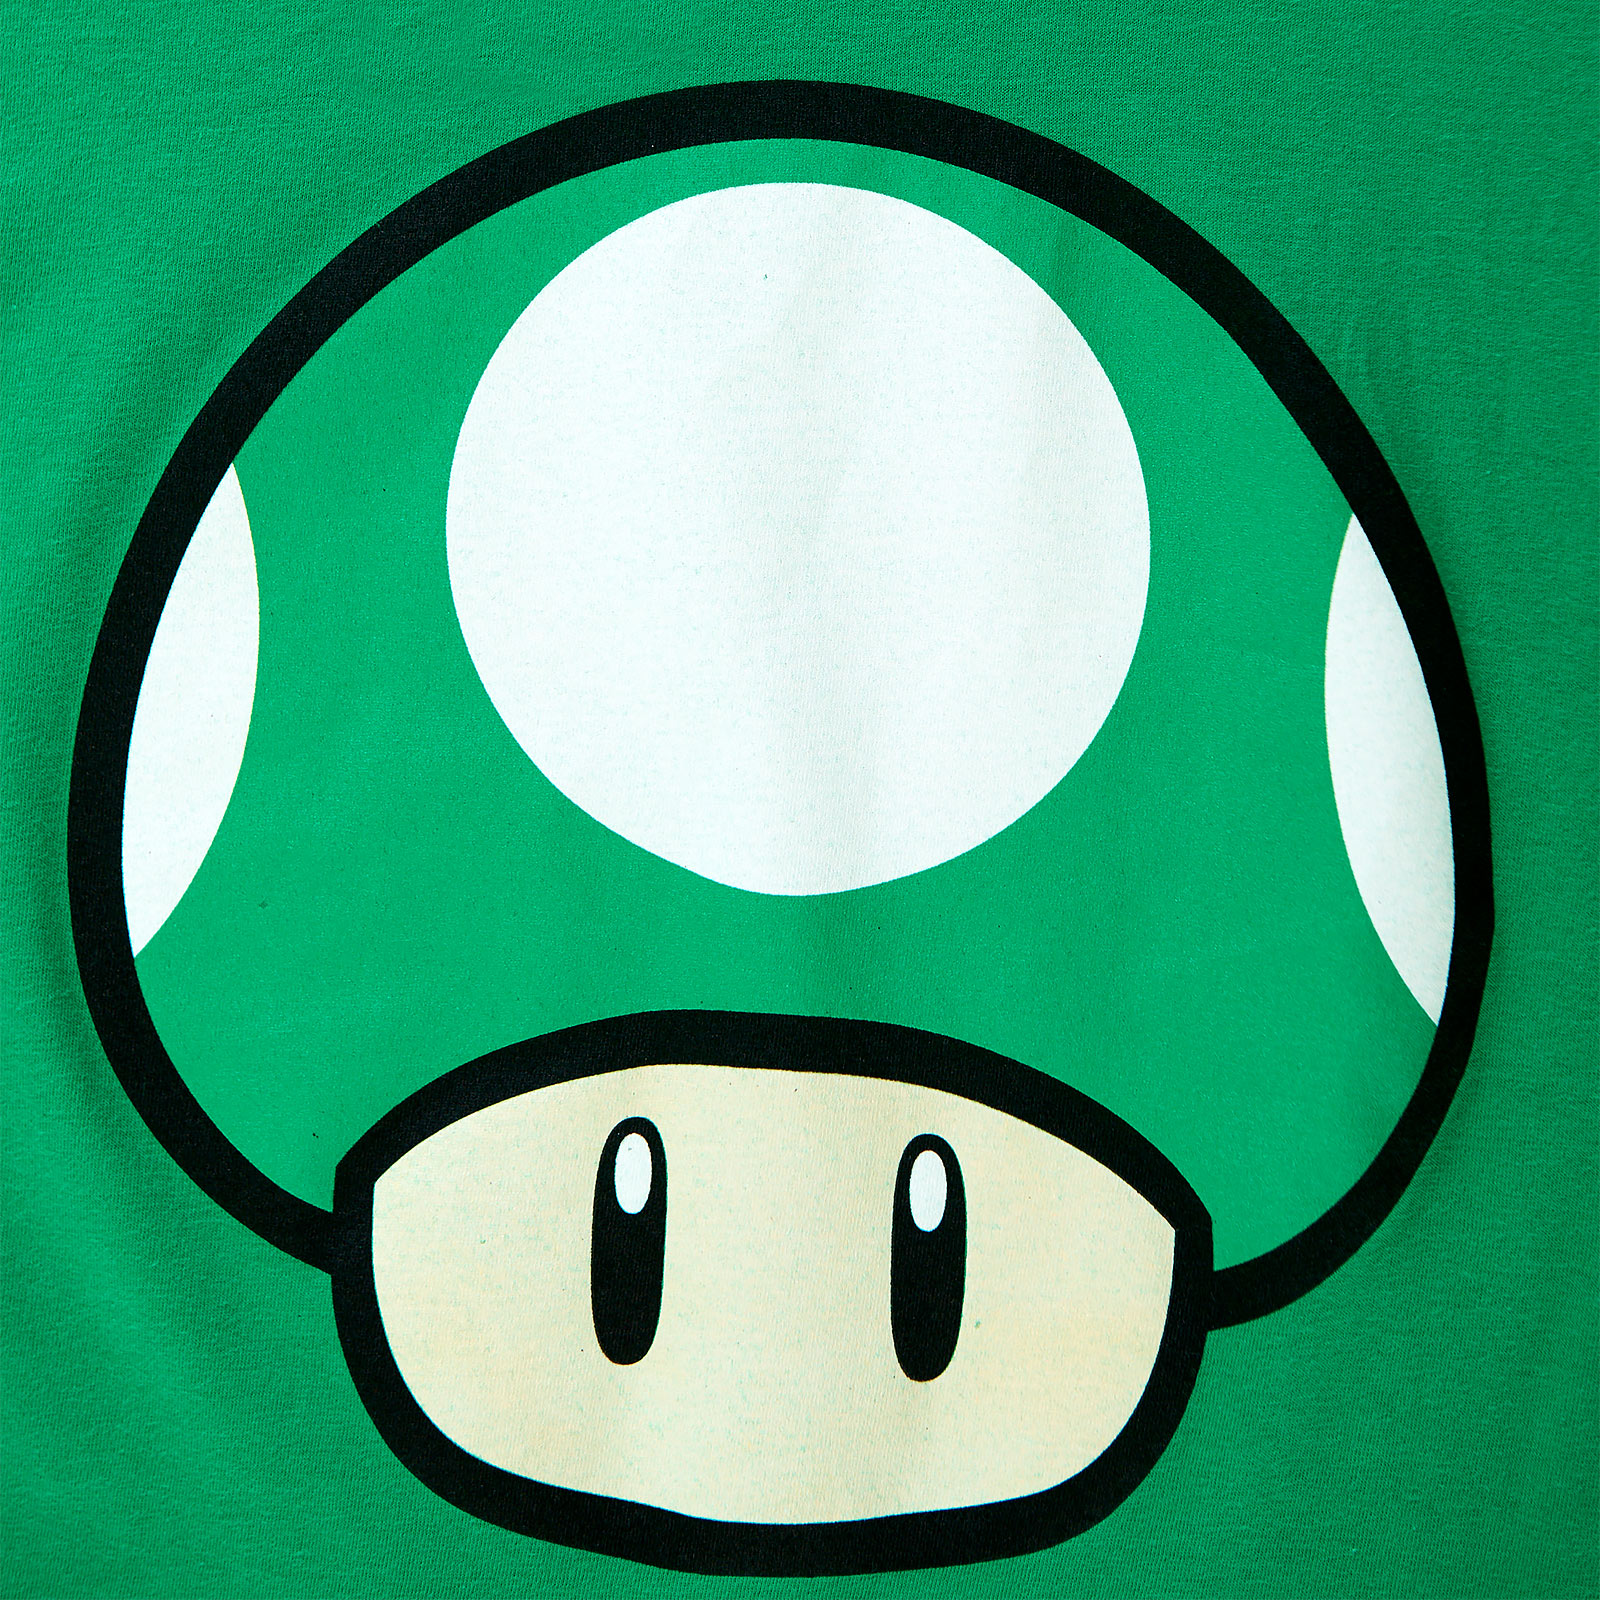 Super Mario - 1 UP Paddenstoel T-Shirt groen